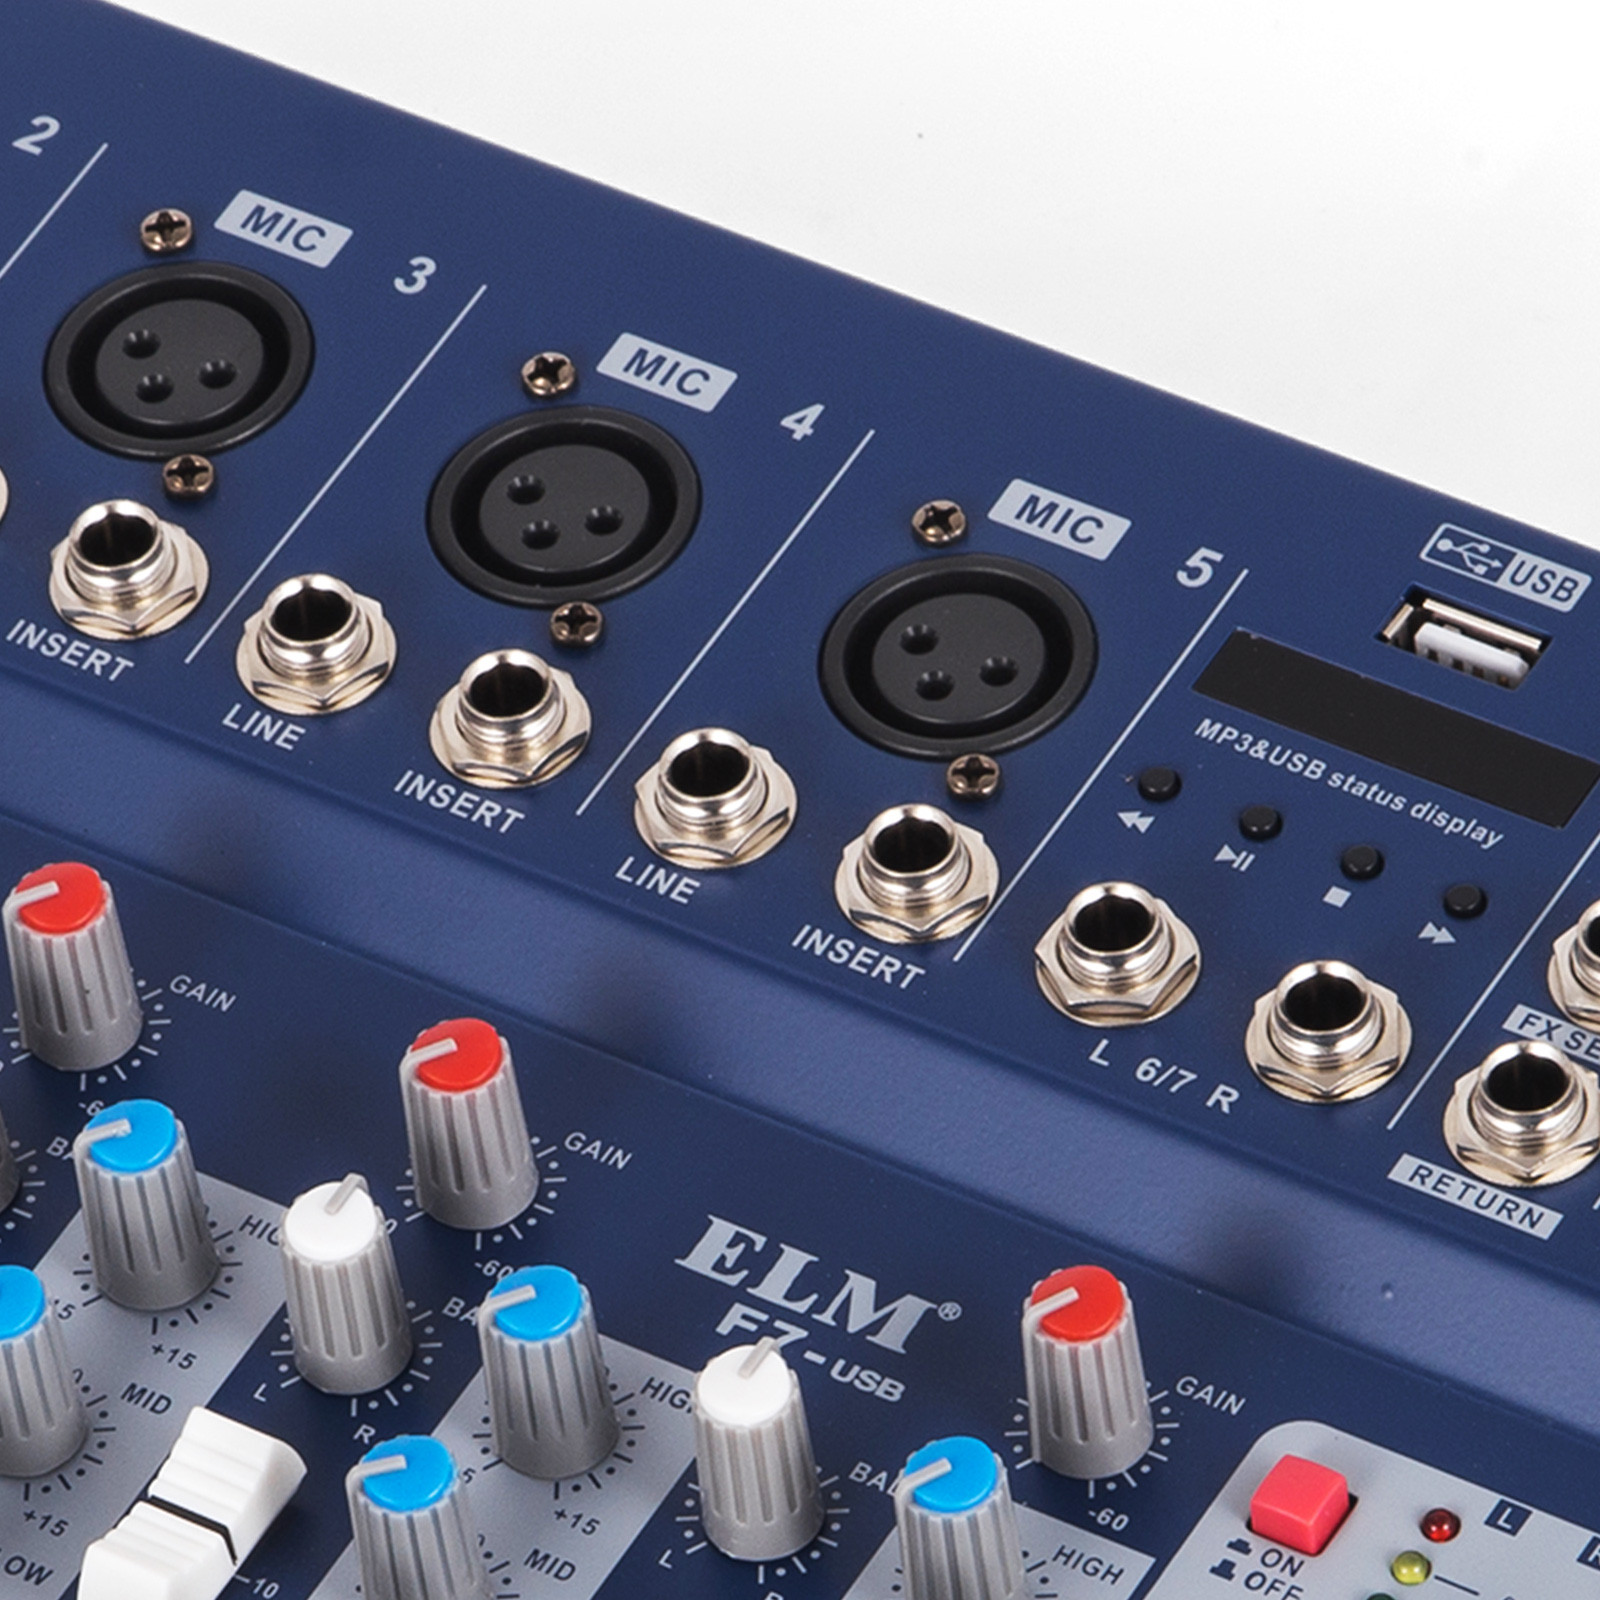 easy audio mixer 213